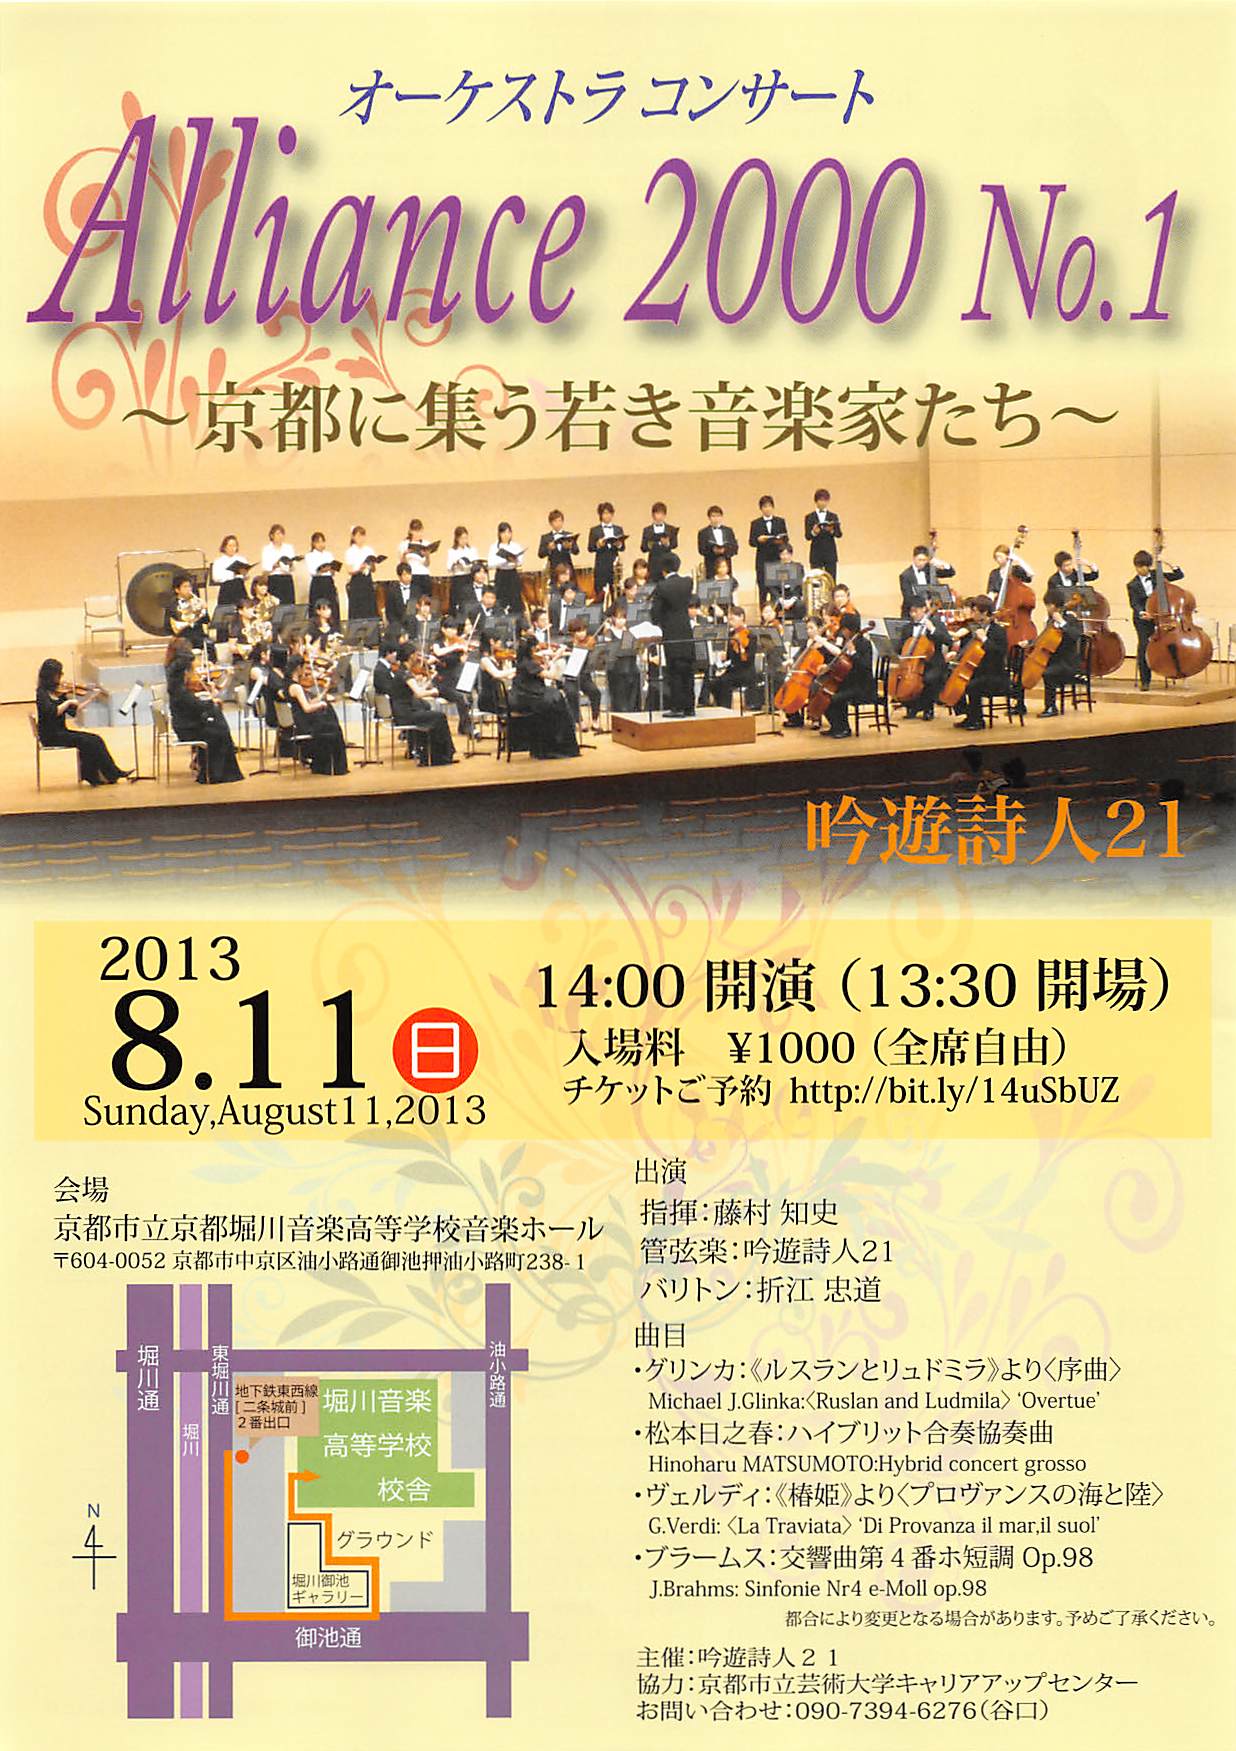 【センター協力企画】Alliance 2000 No.1～京都に集う若き音楽家たち～